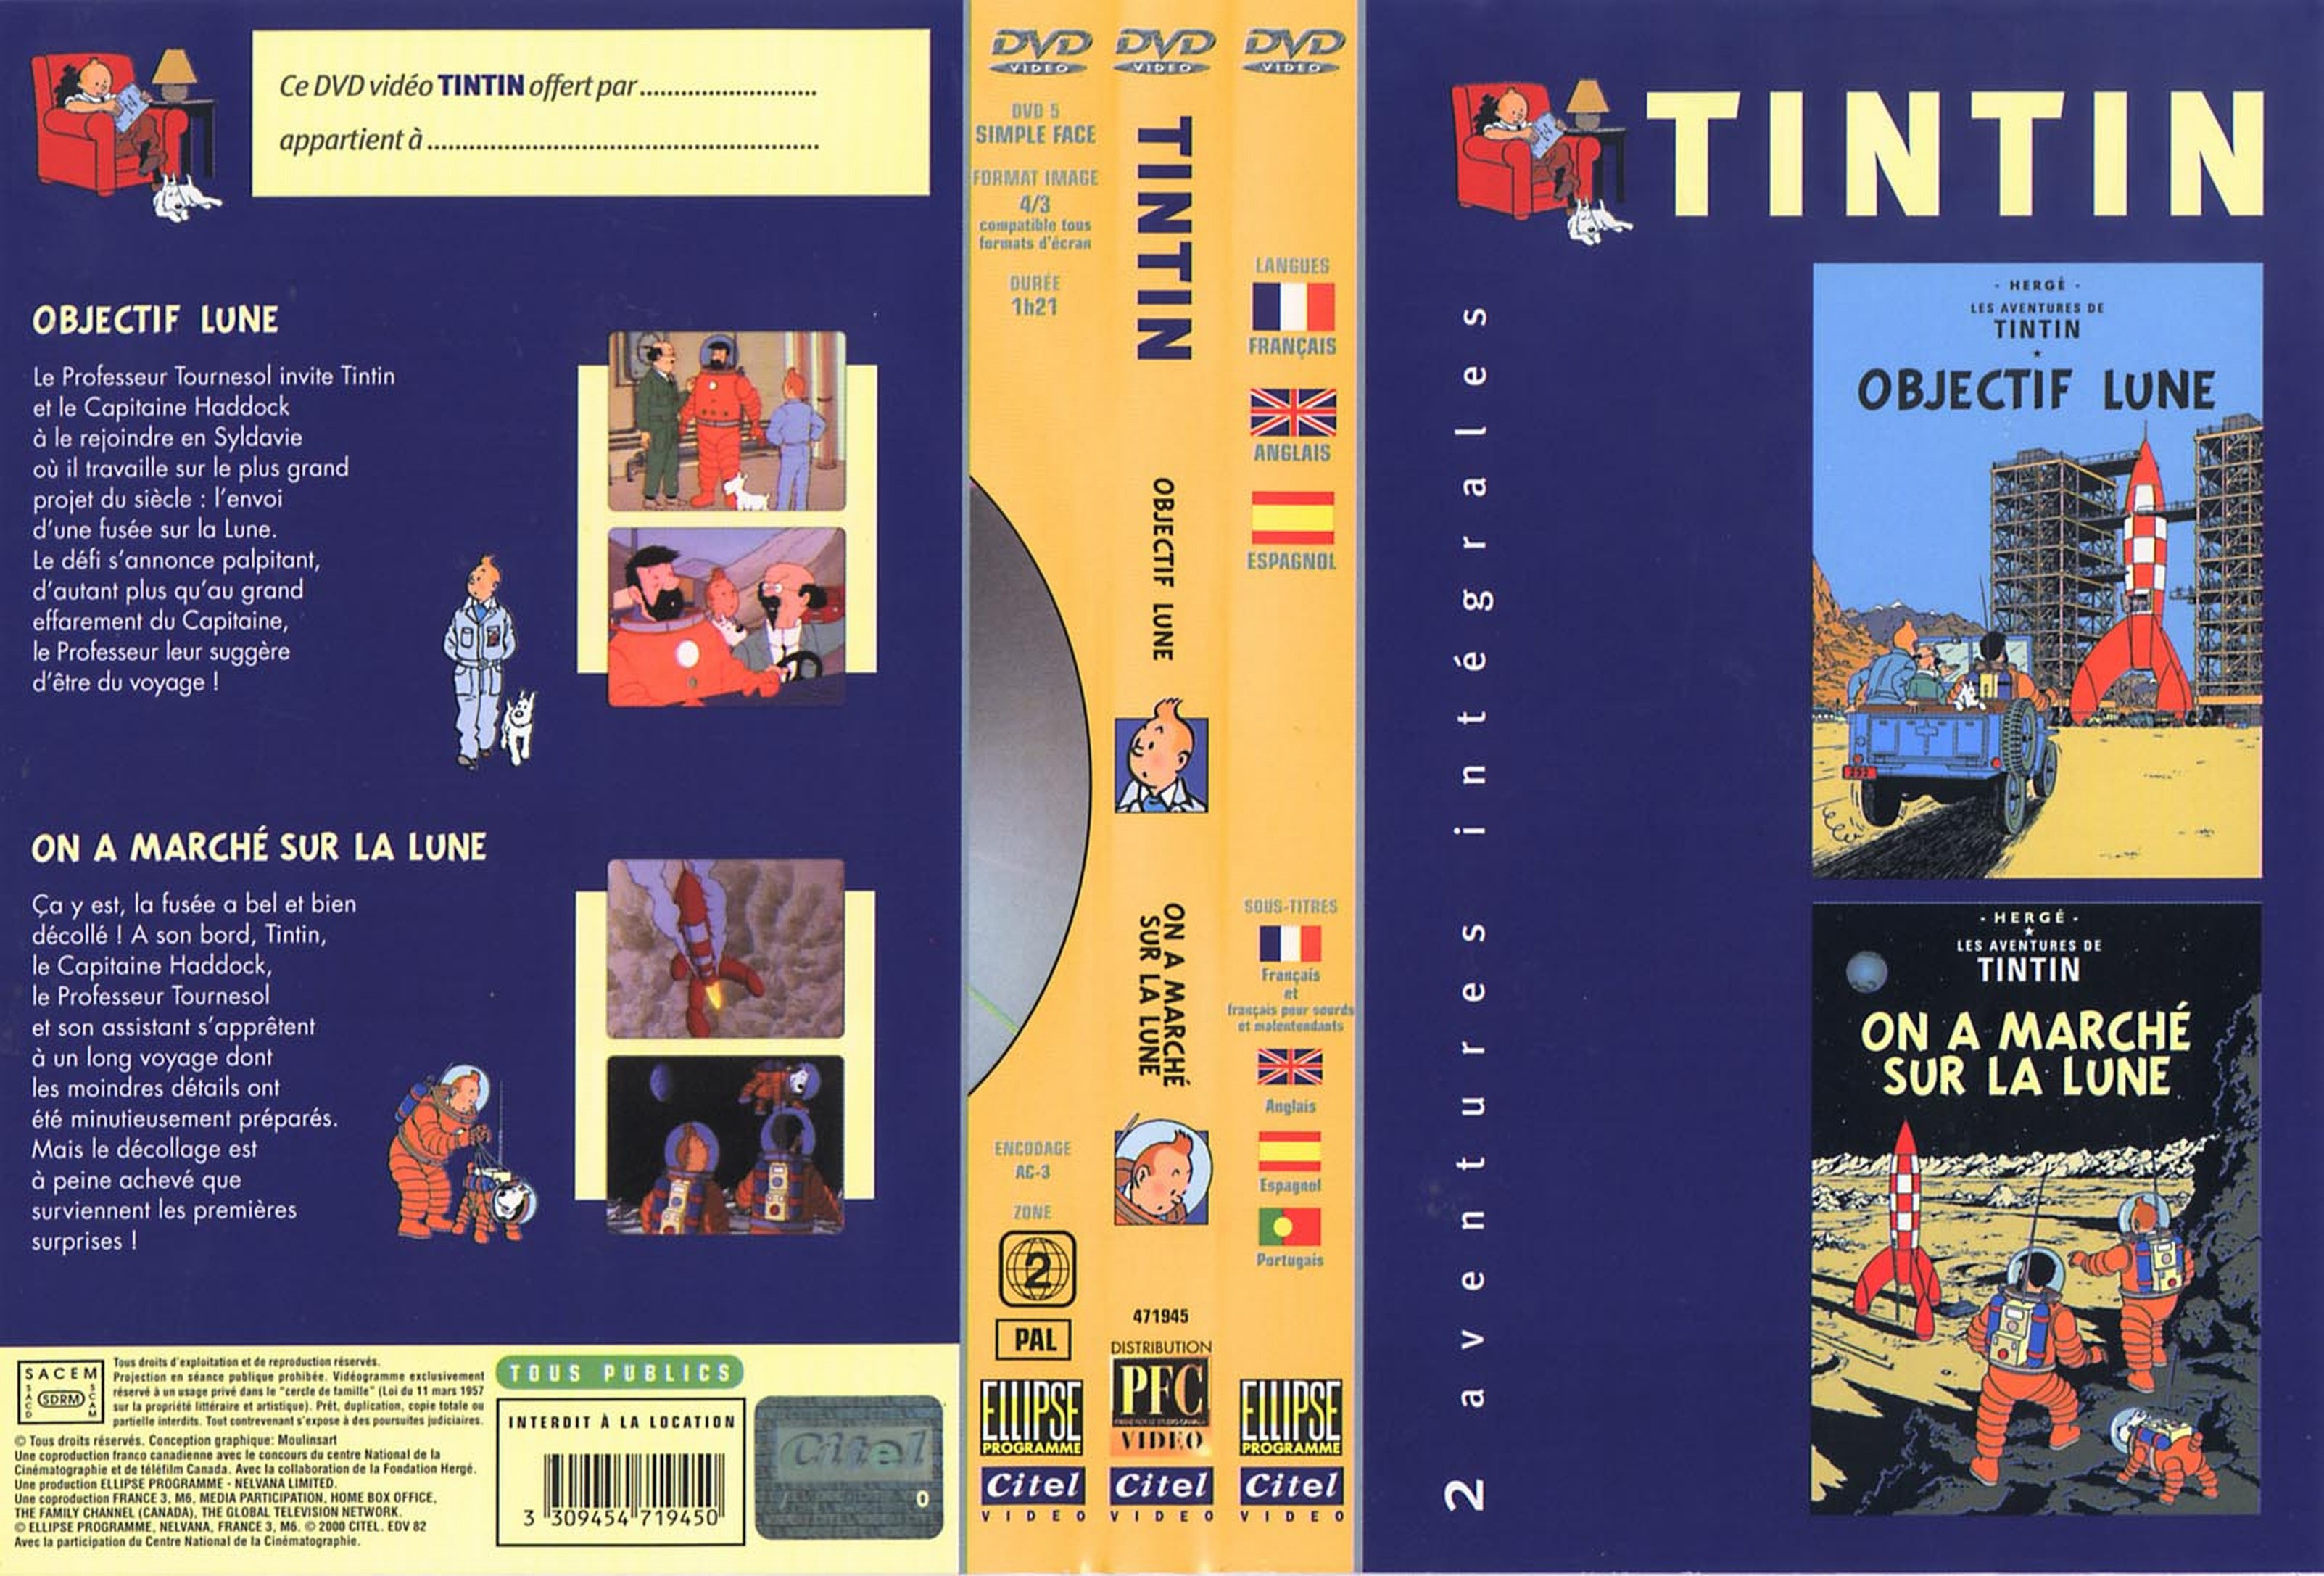 Jaquette DVD Tintin - Objectif lune + On a march sur la lune